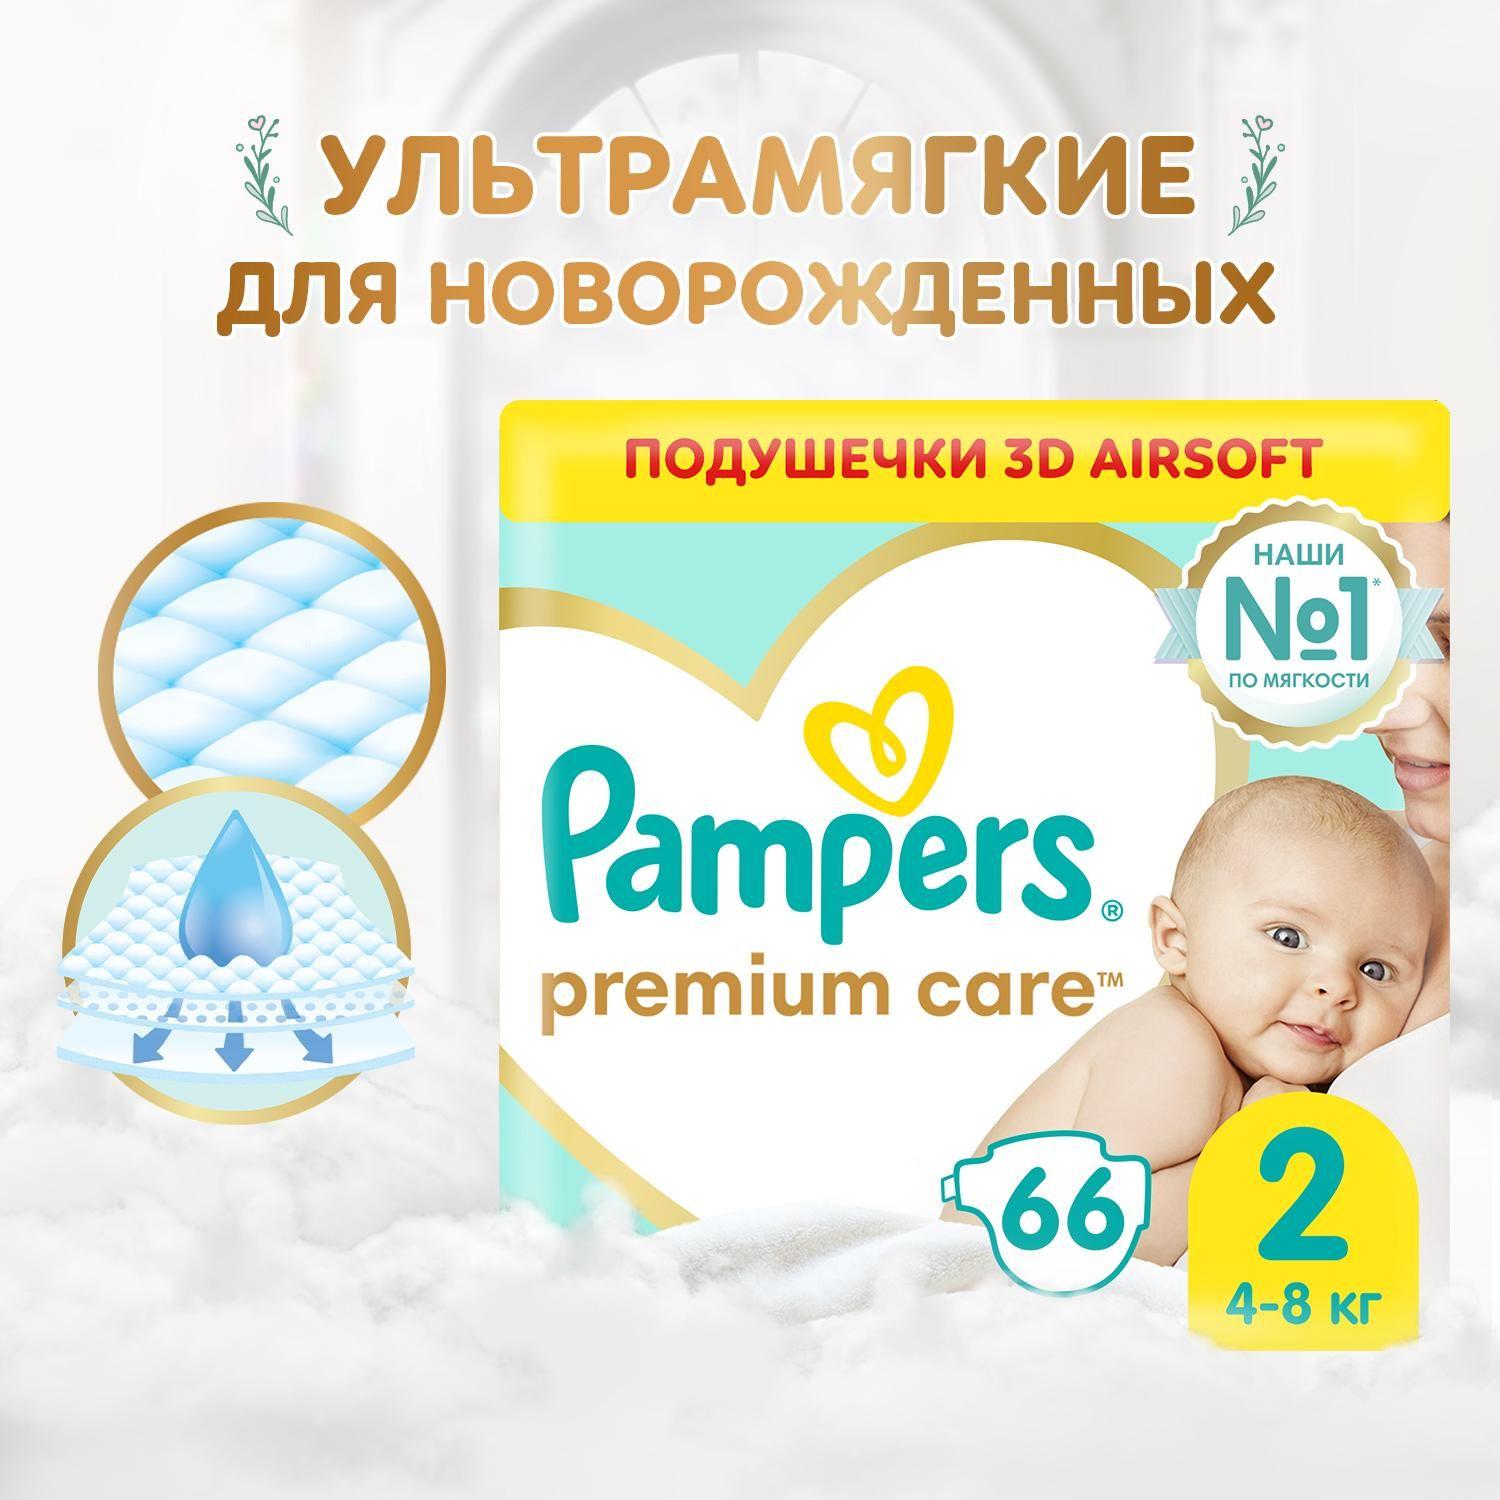 Подгузники для новорожденных Pampers Premium Care 2 размер, 4-8 кг, 66 шт, ультрамягкие